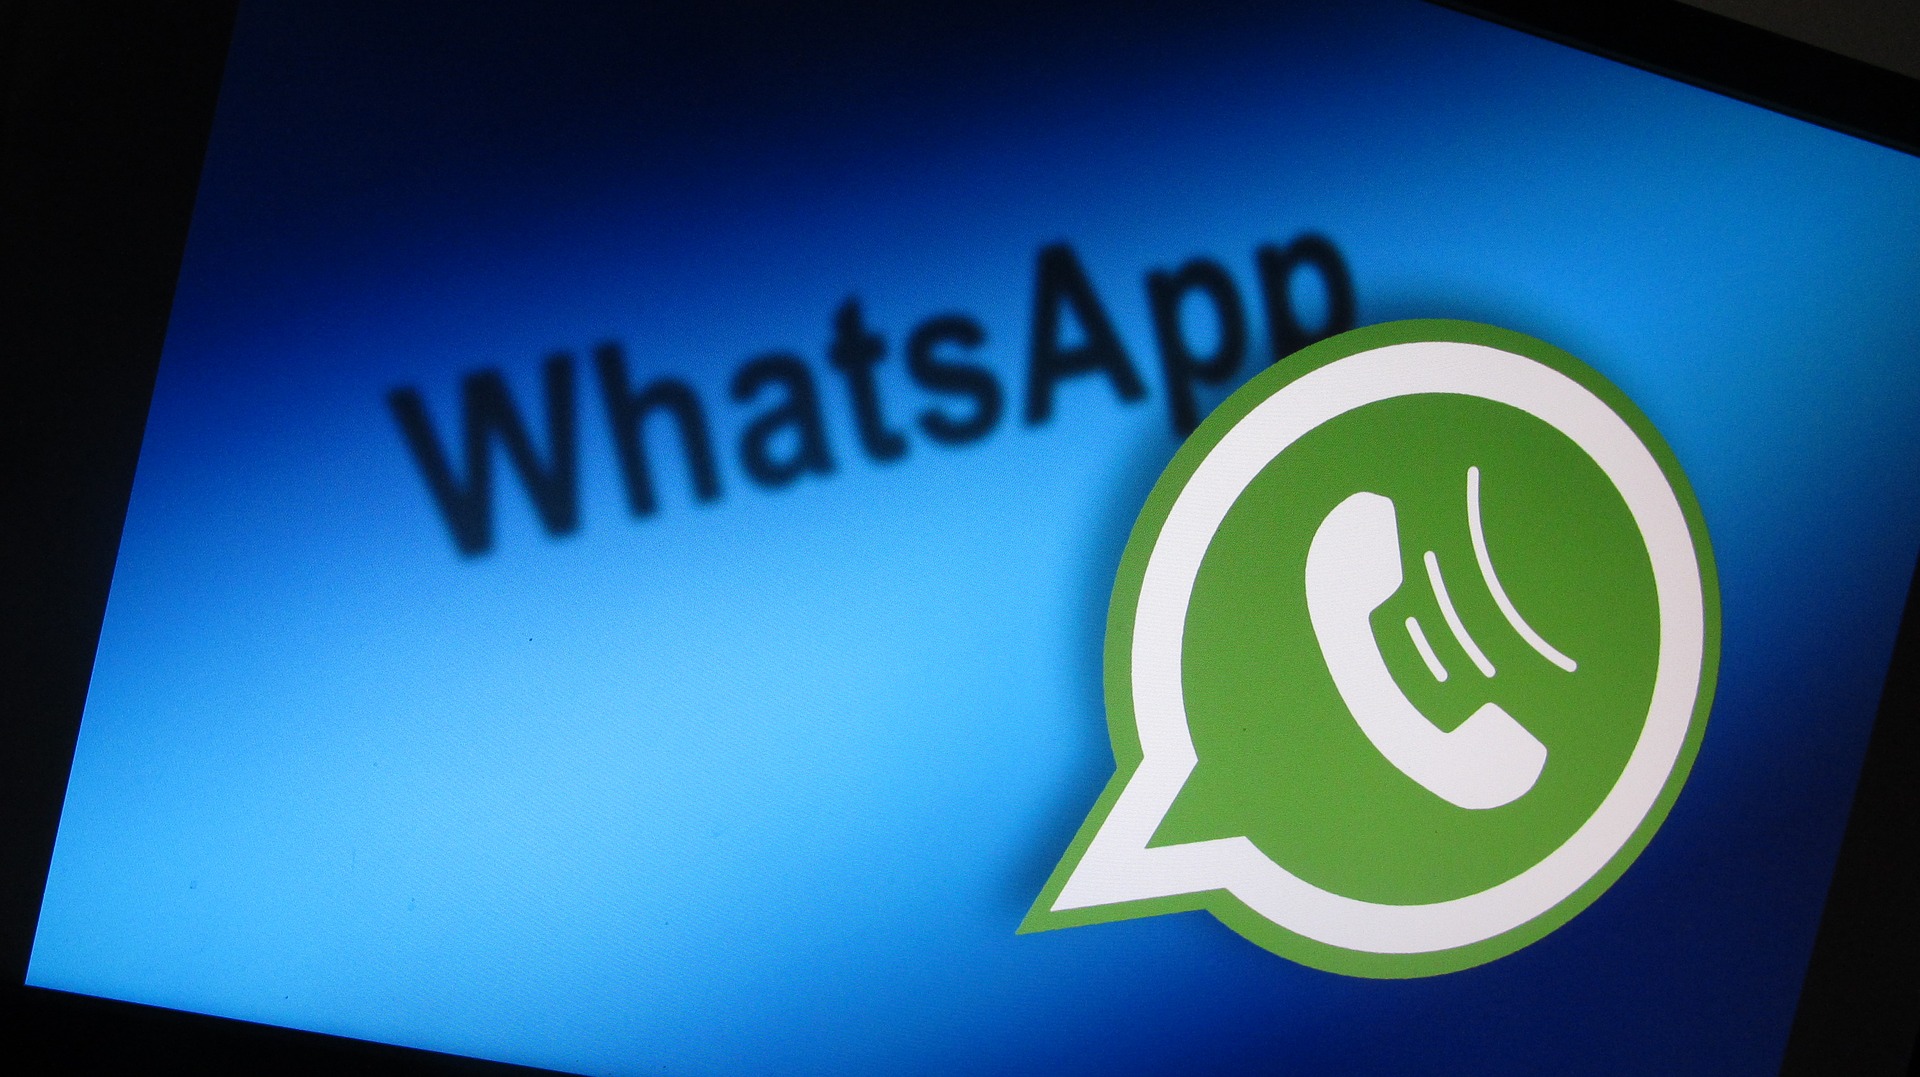 WhatsApp dijo que nadie perderá la funcionalidad de su cuenta a partir del próximo 15 de mayo, incluso si no acepta su nueva política de privacidad, dando así marcha atrás a lo que venía sosteniendo. (Foto Prensa Libre: Pixabay)